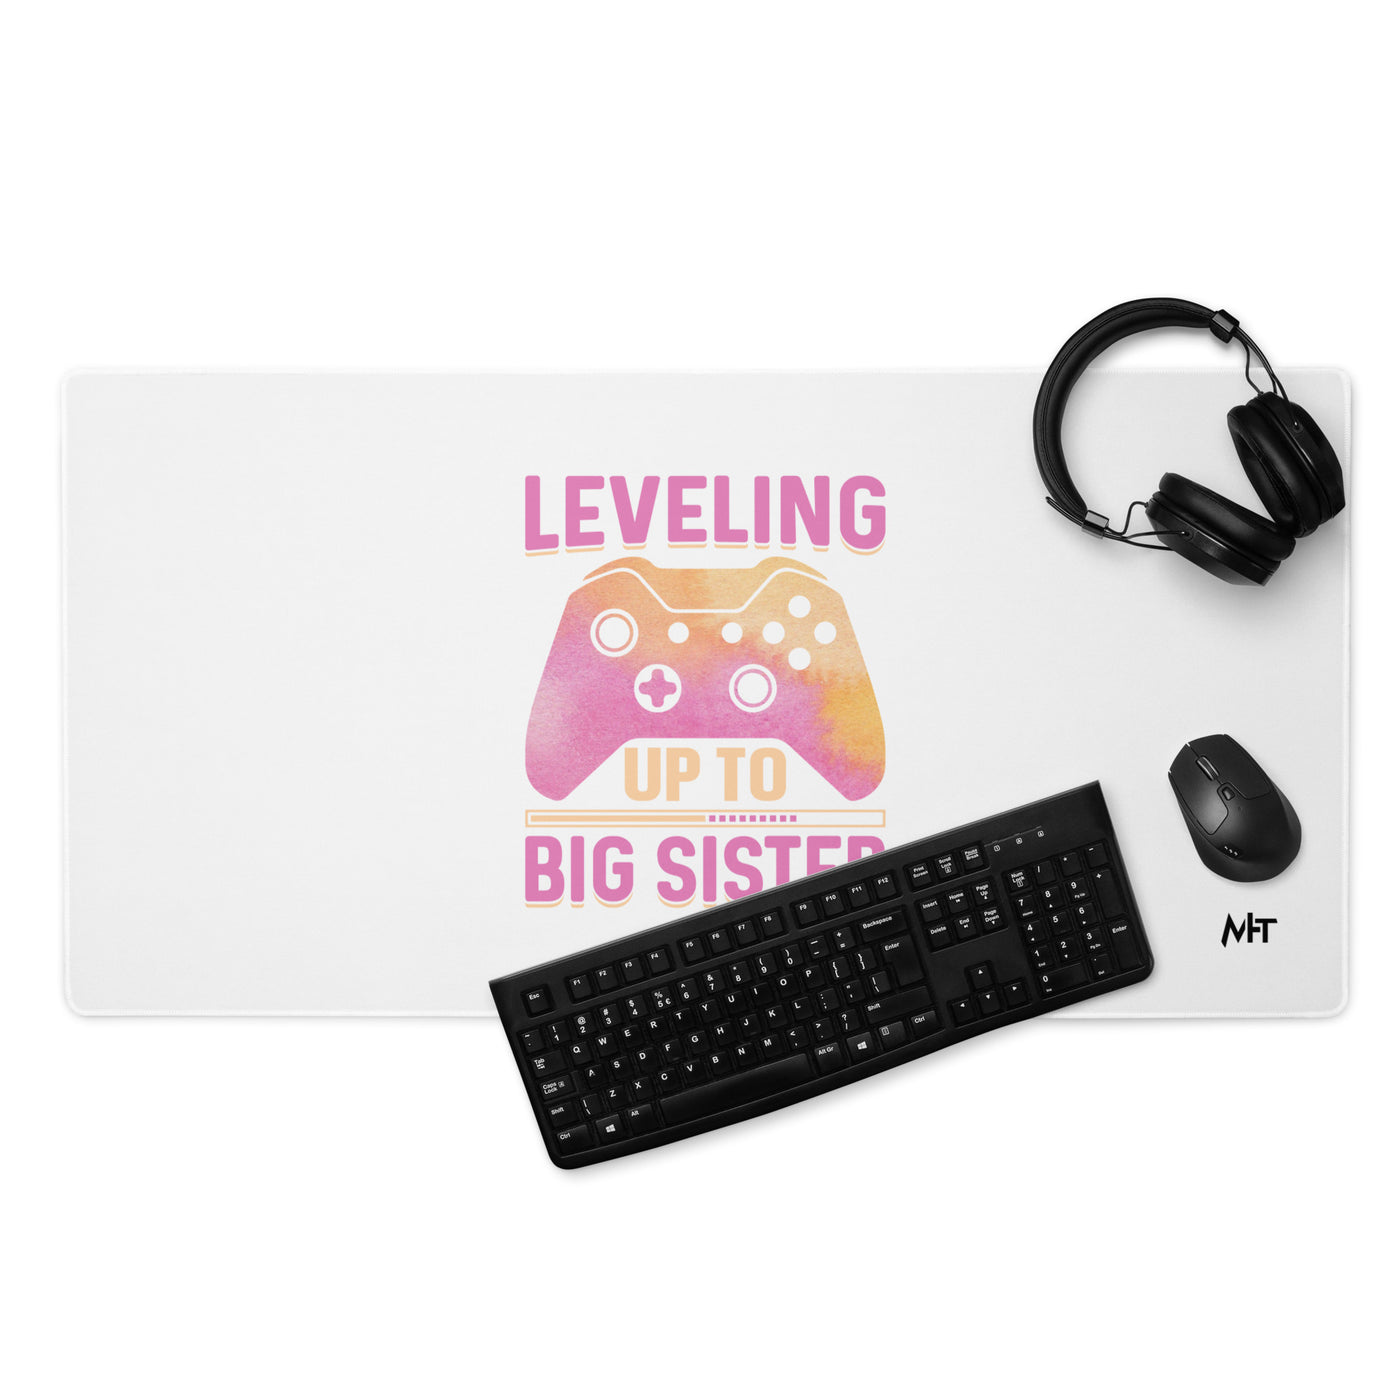 Levelling up to Big Sister for light color - Desk Mat